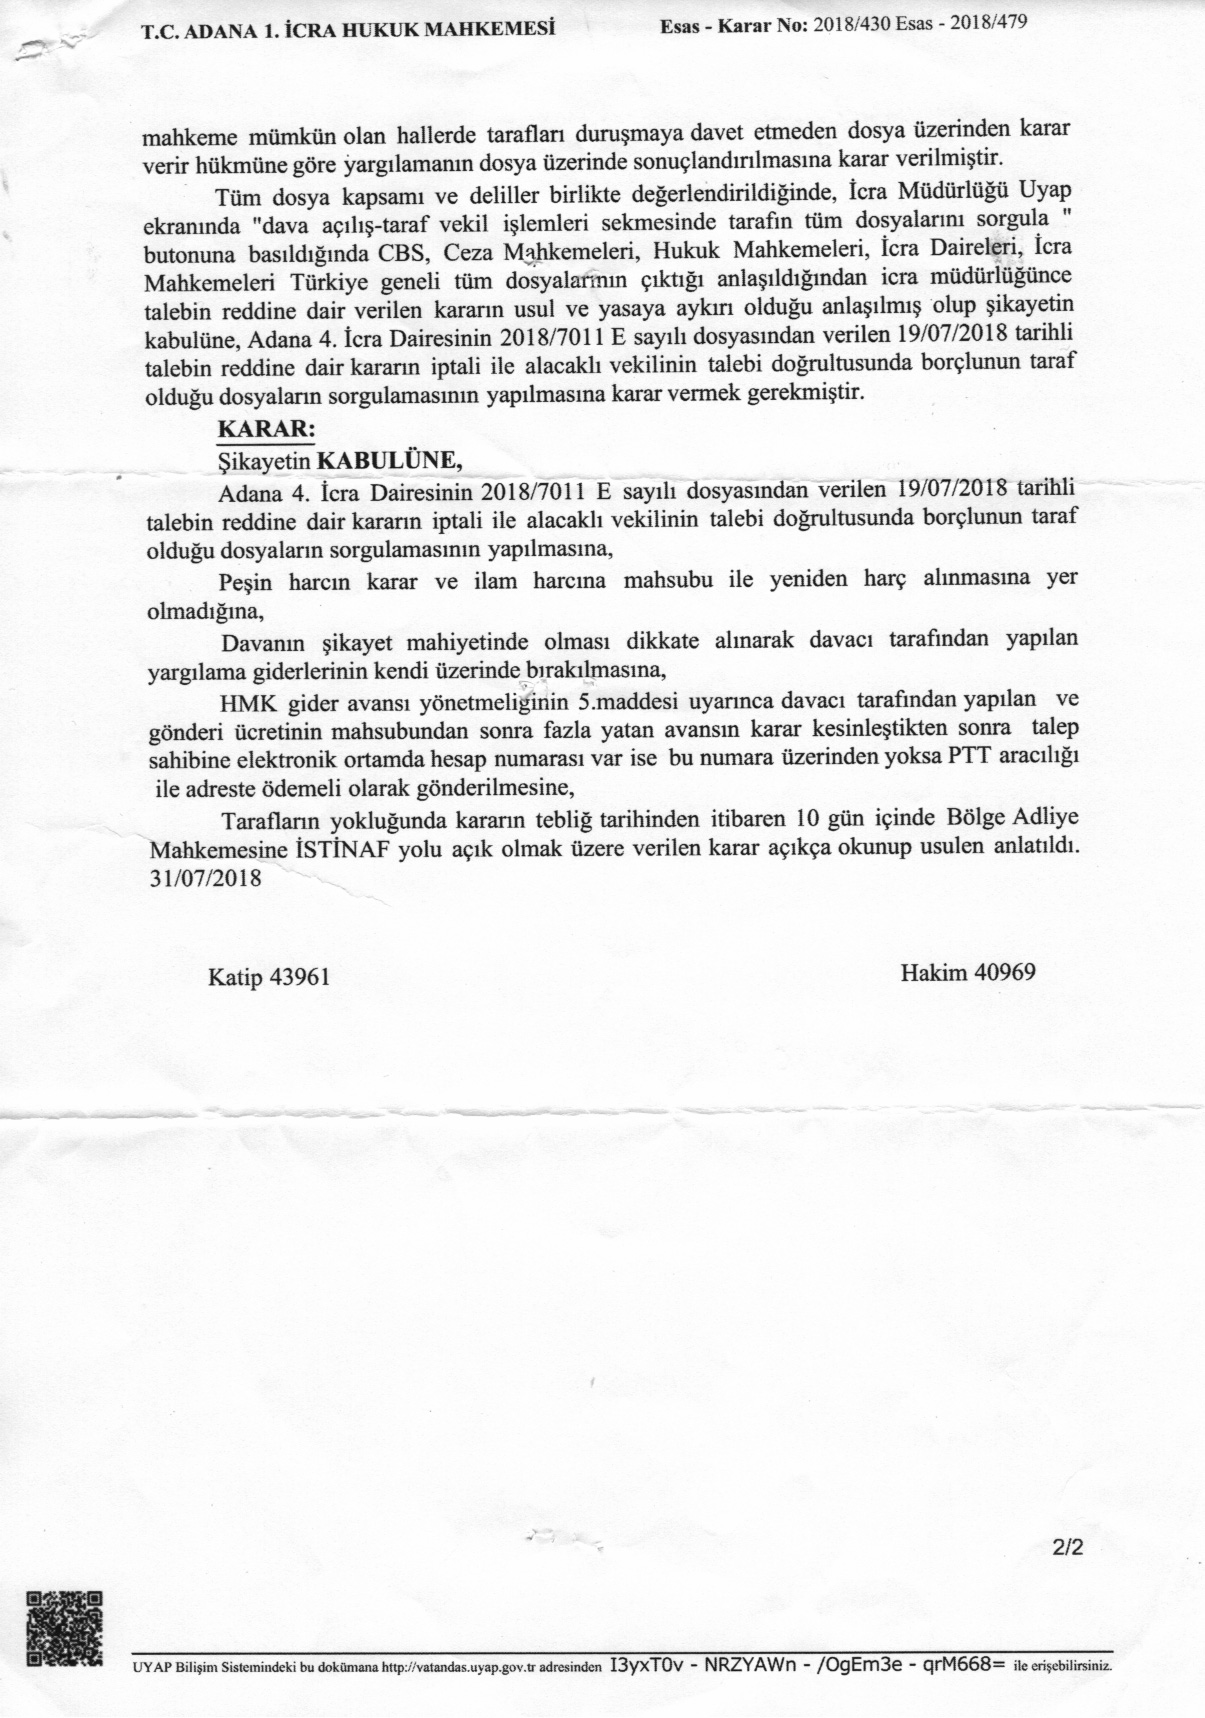 Türkiye Genelinde Borçlunun Alacaklı Oldugu Dosyaların Sorgulanmasina Dair Karar - 2